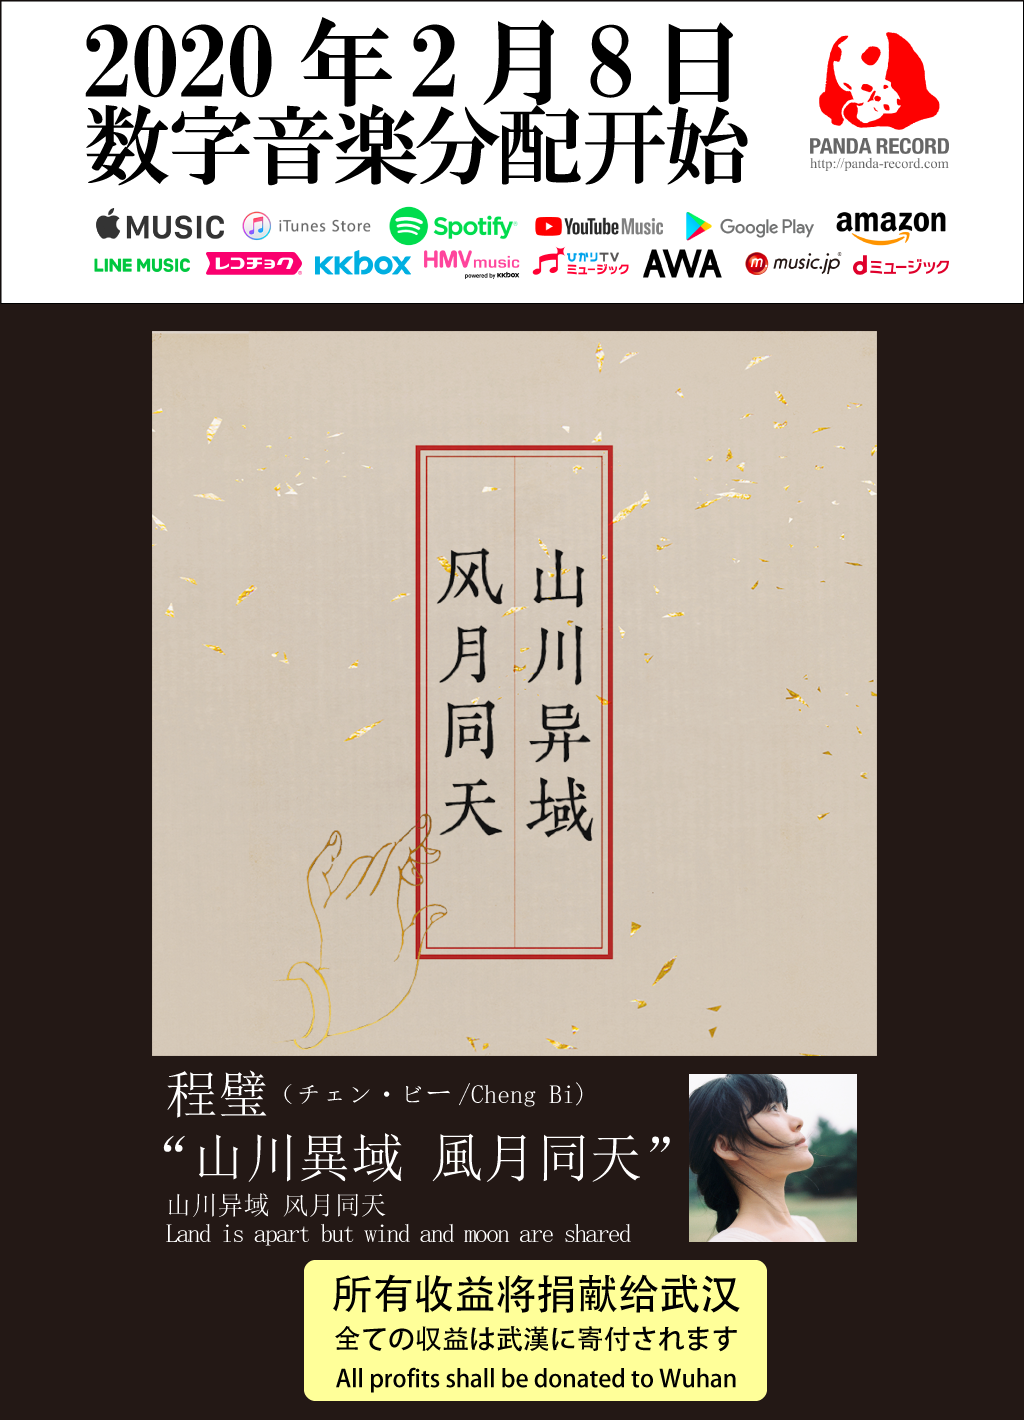 中国のシンガーソングライター 程璧(チェン・ビー)が歌う
武漢へ贈るチャリティーソング「山川異域 風月同天」を
2020年2月8日に日本と中国で同時リリース